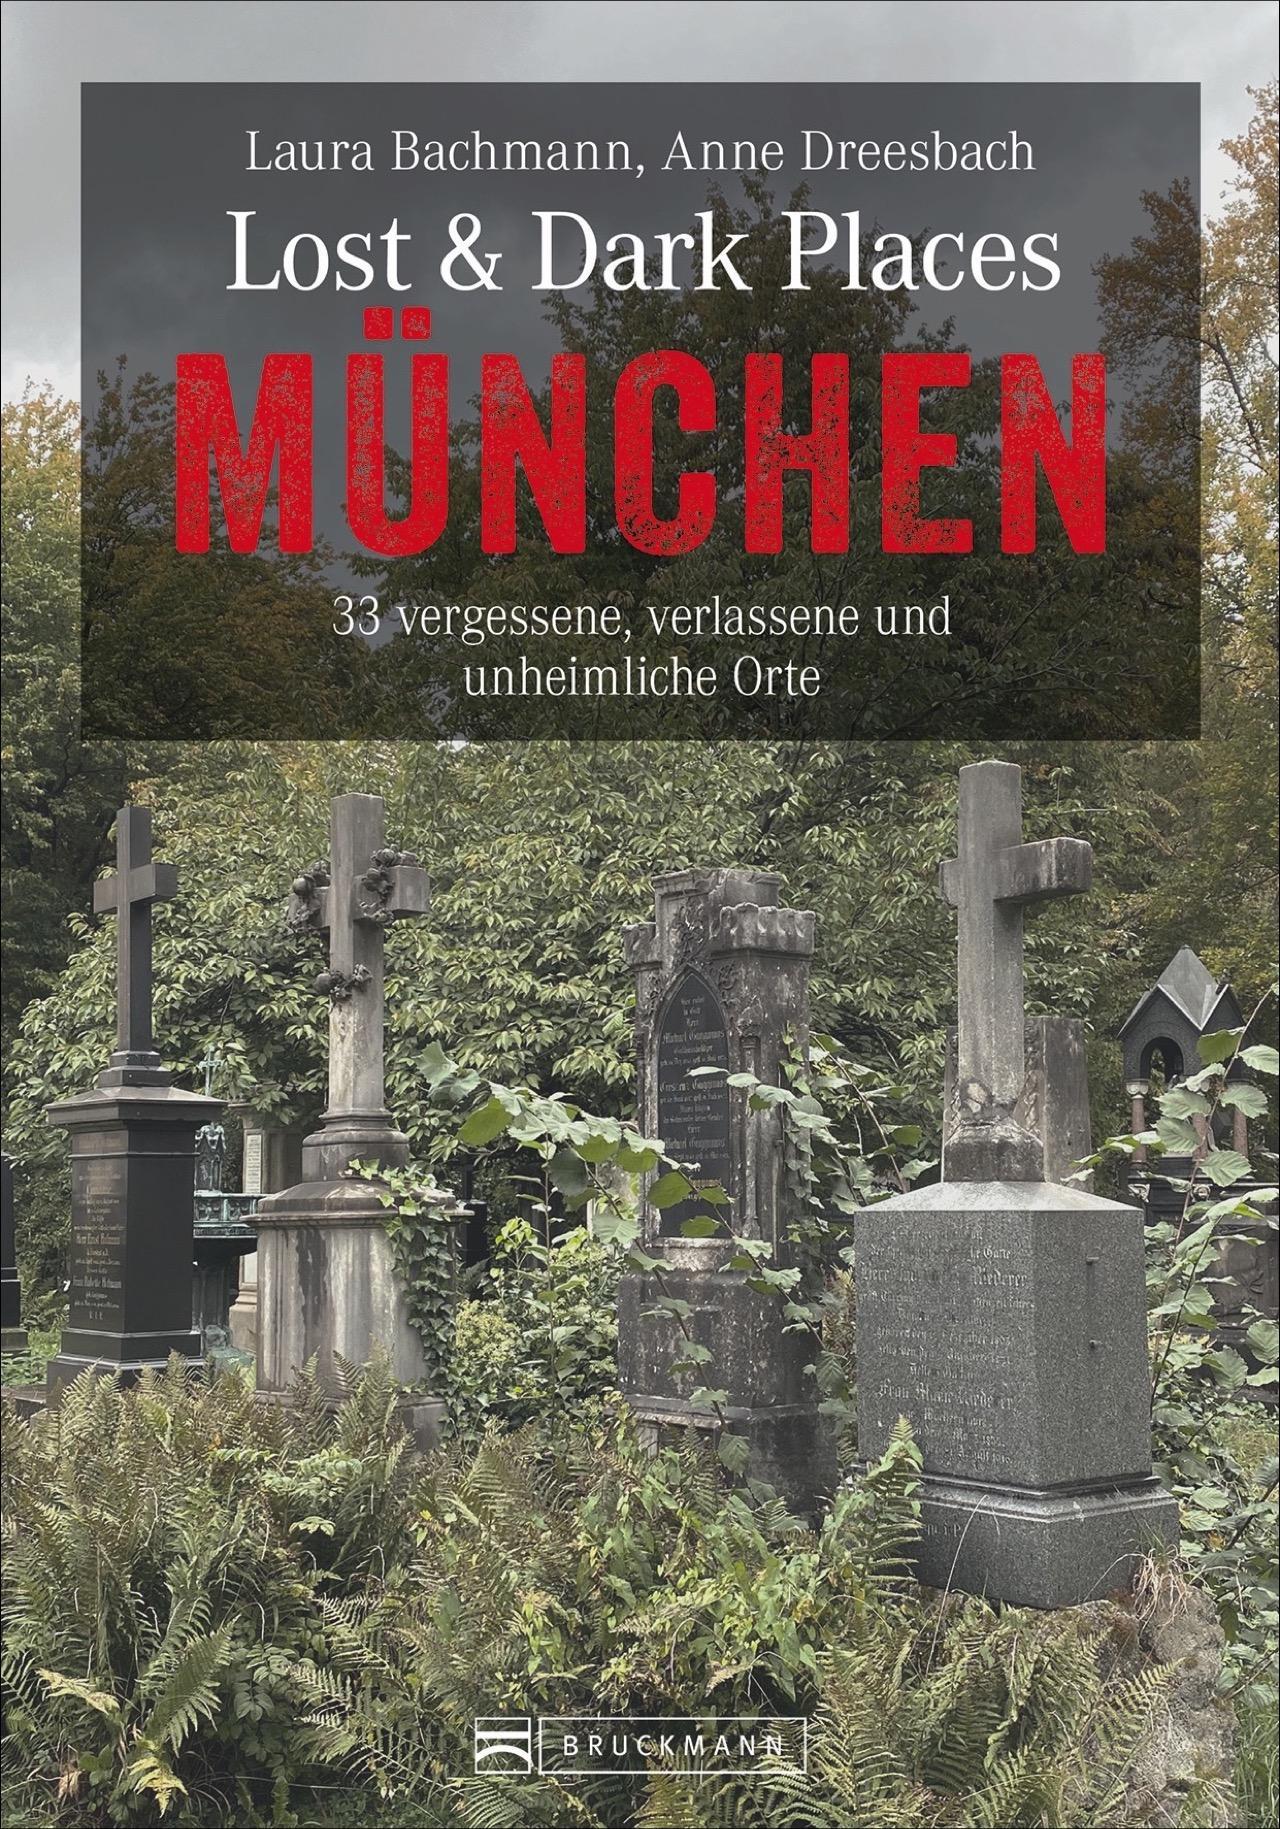 Inkl verlassene und unheimliche Orte Bruckmann Dark-Tourism-Guide: Lost & Dark Places München Schaurige Geschichten und exklusive Einblicke Anfahrtsbeschreibungen. 33 vergessene 